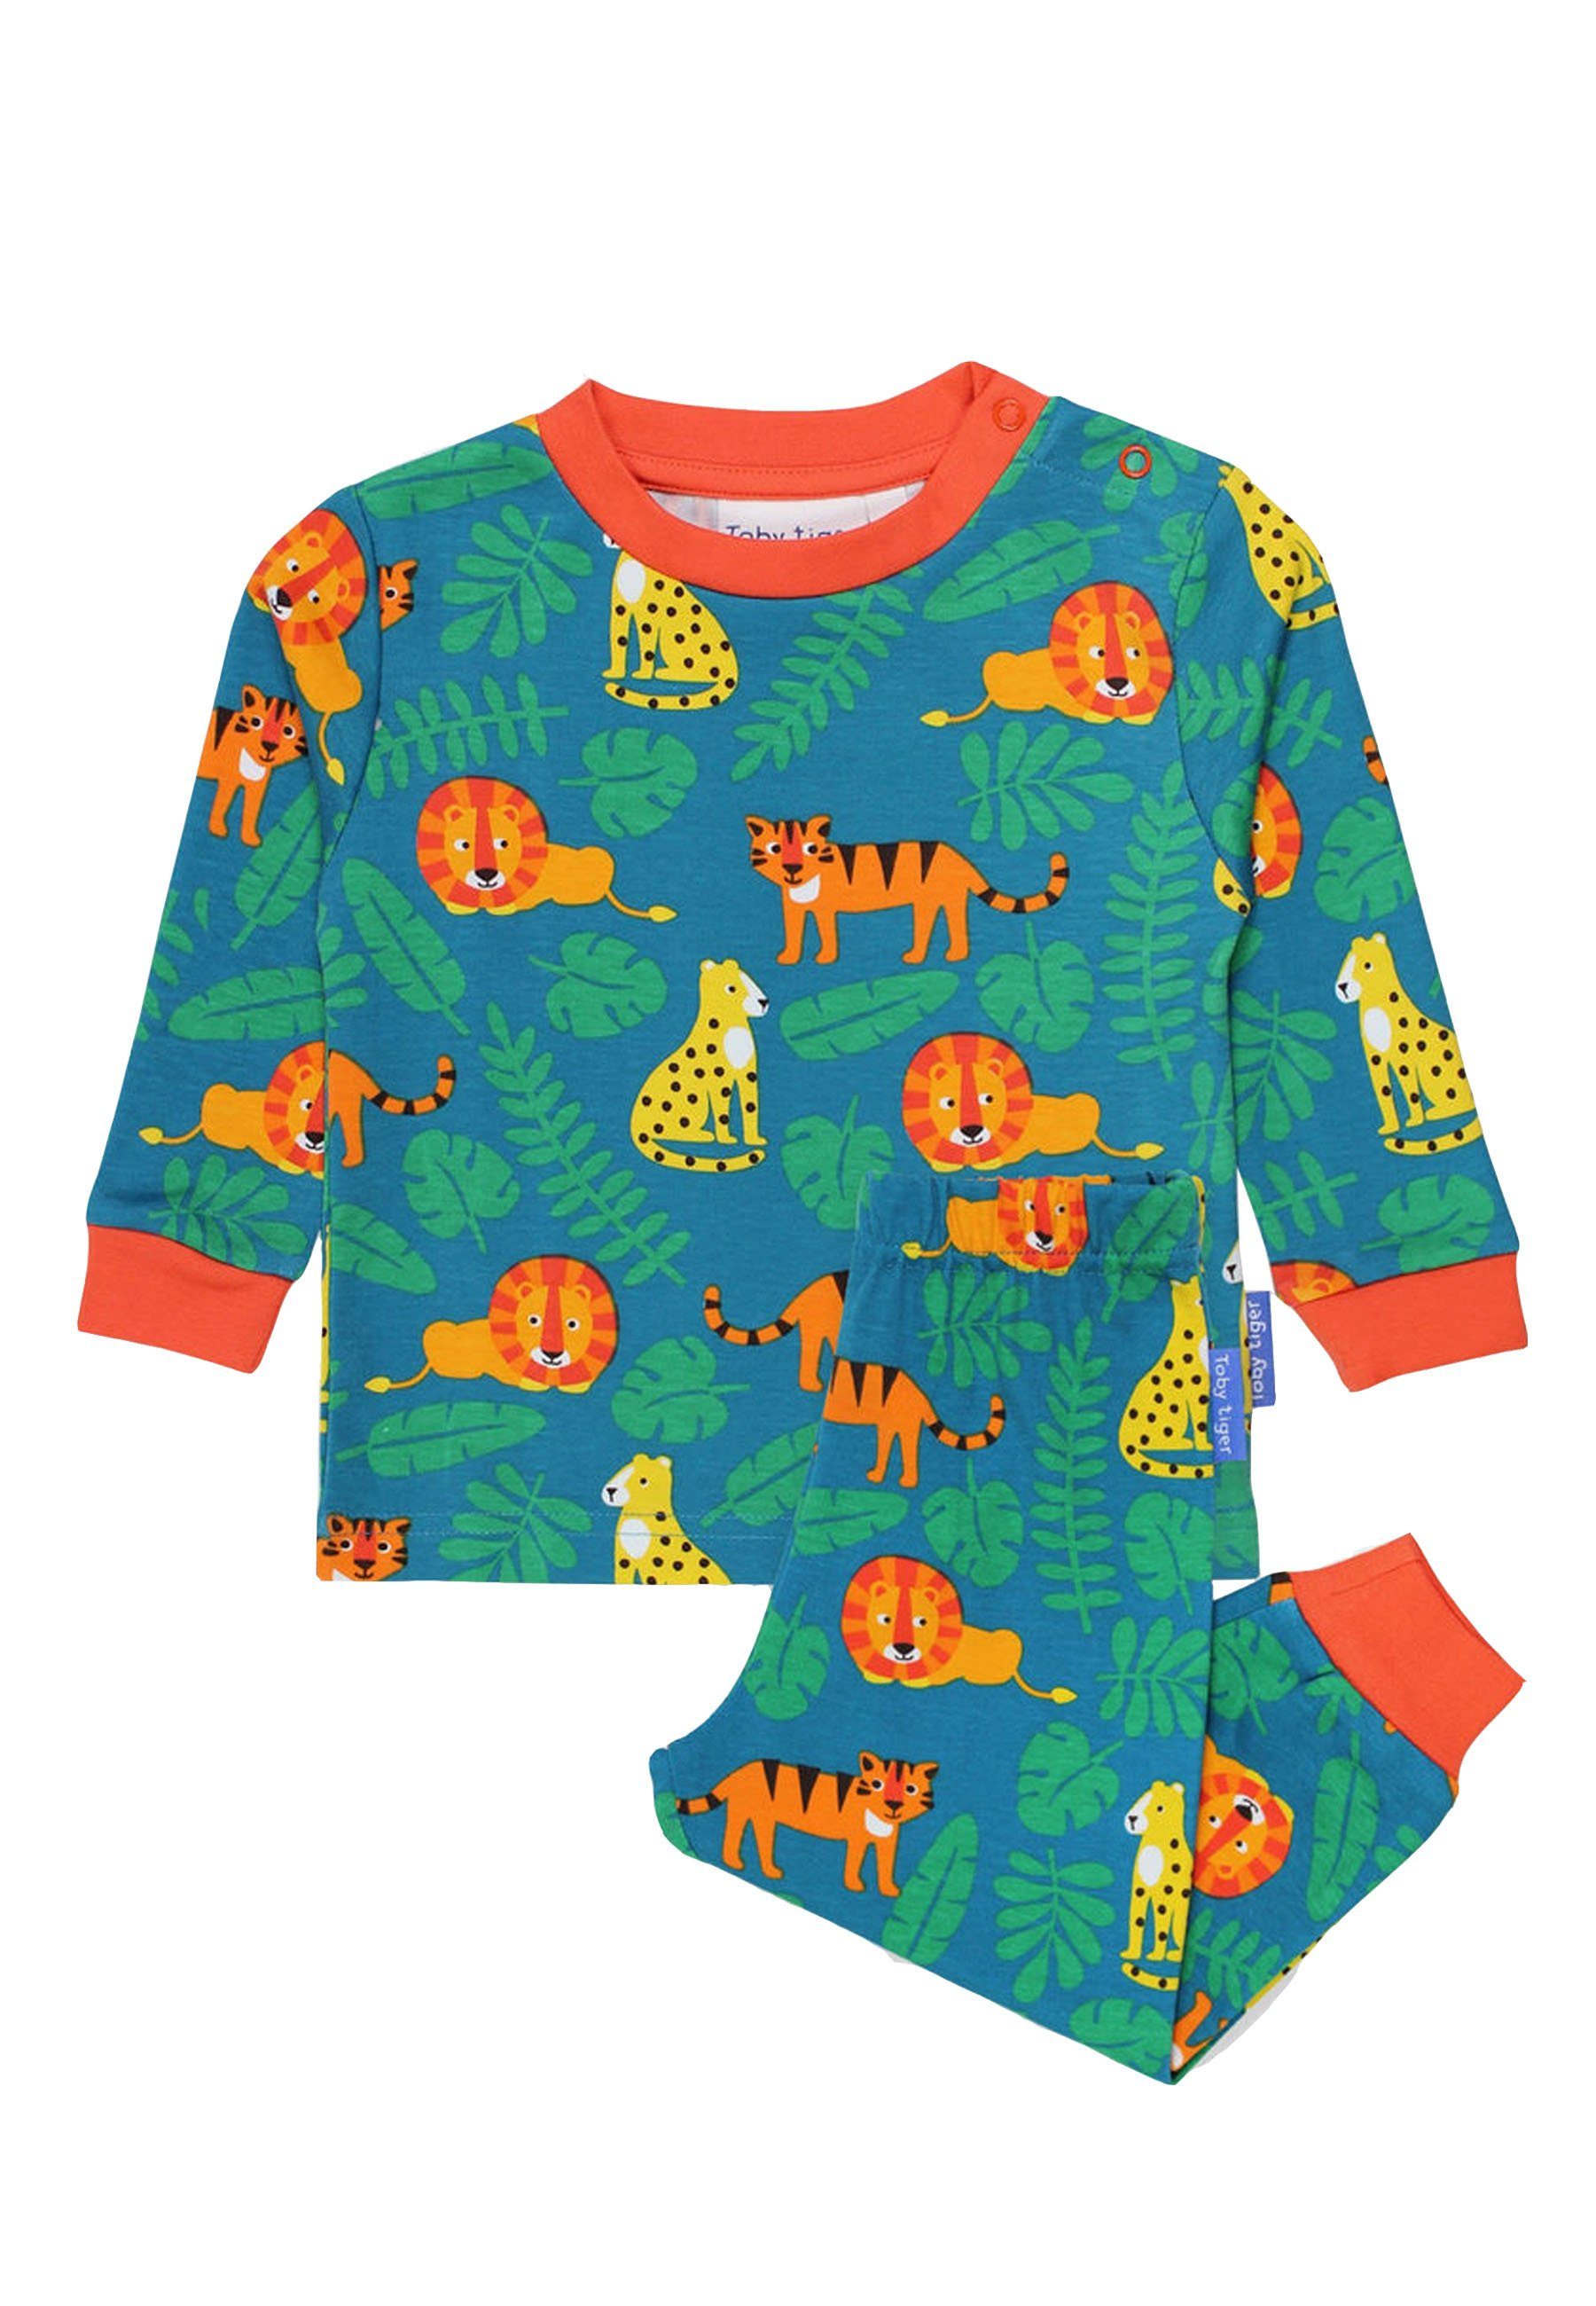 Toby Tiger Schlafanzug Schlafanzug mit Raubkatzen Print